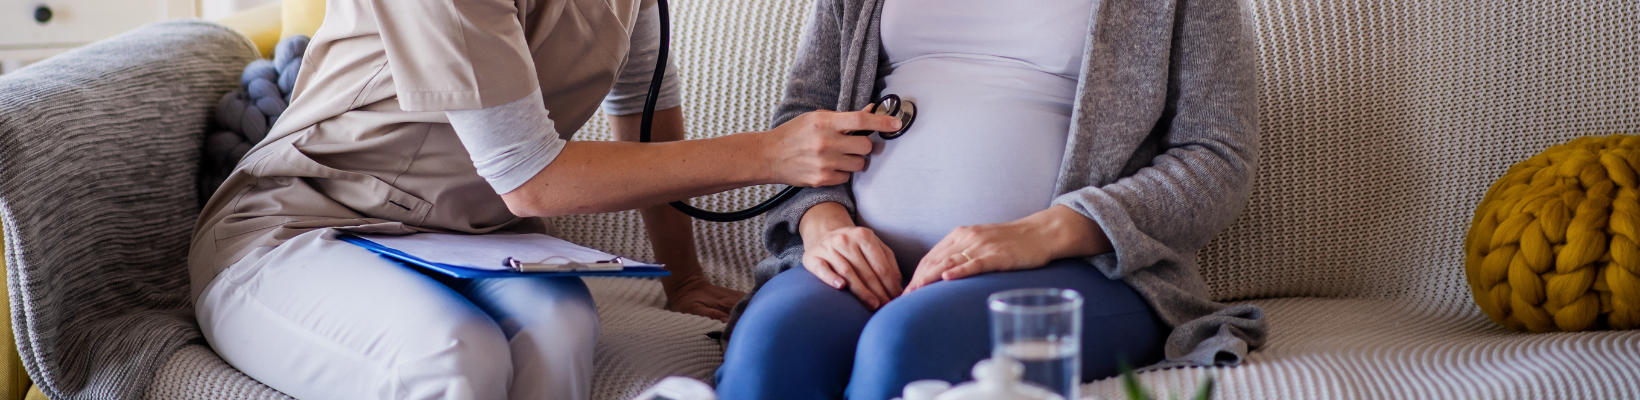 Inywidualne przygotowanie do porodu. pielęgniarka bada kobiete w ciąży